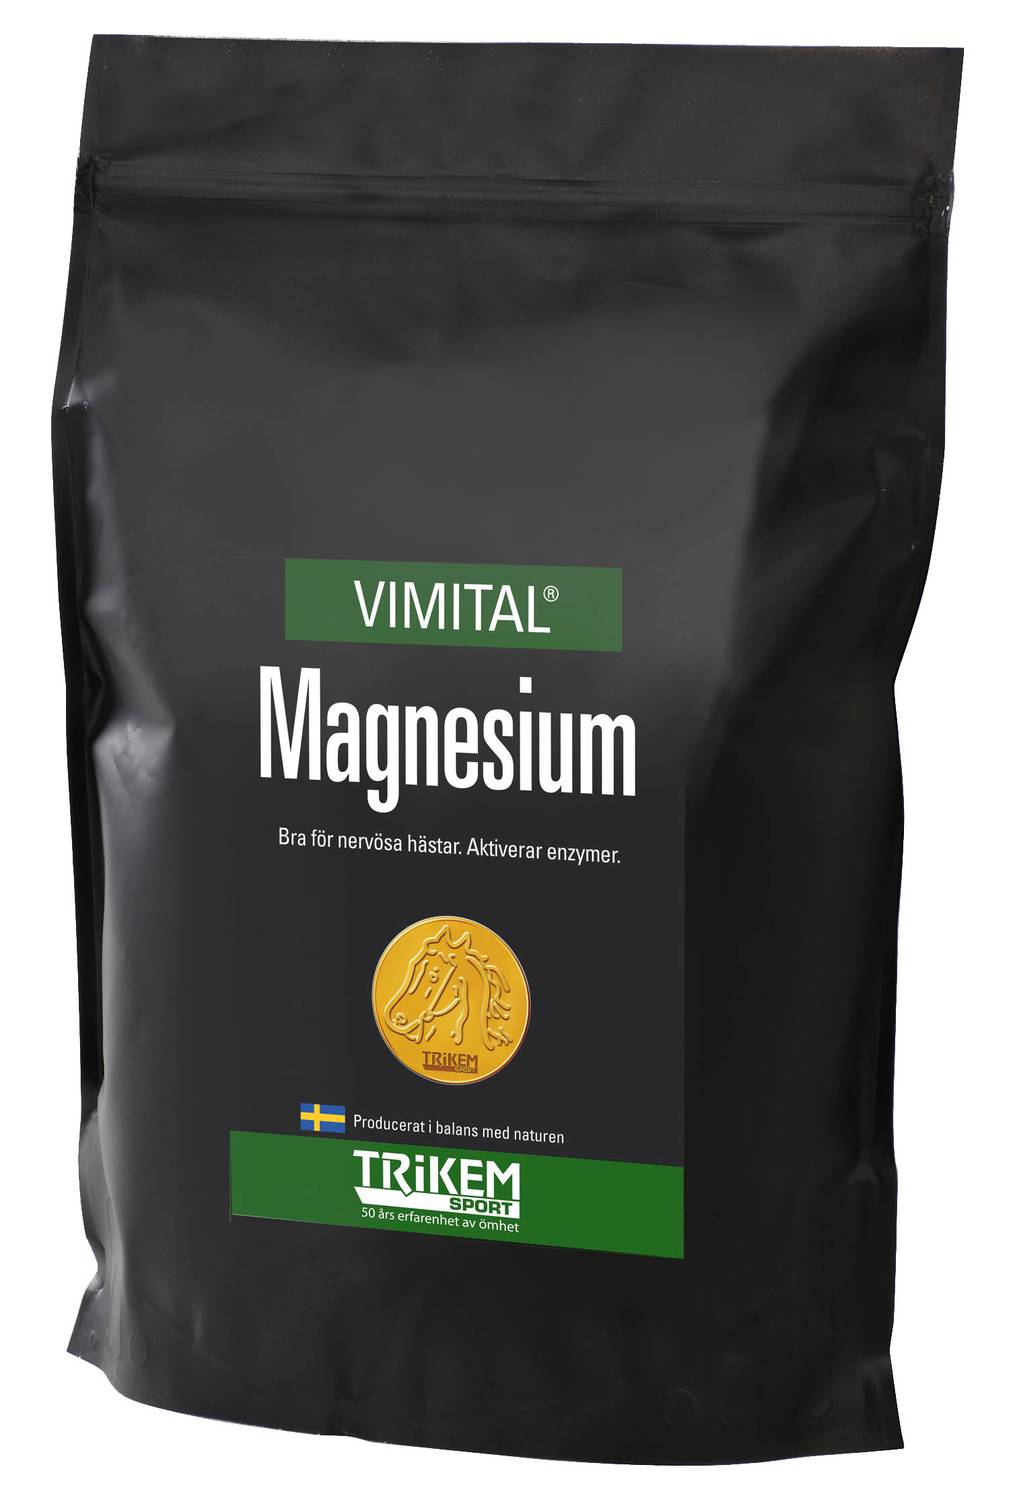 Vimital Magnesium 6kg